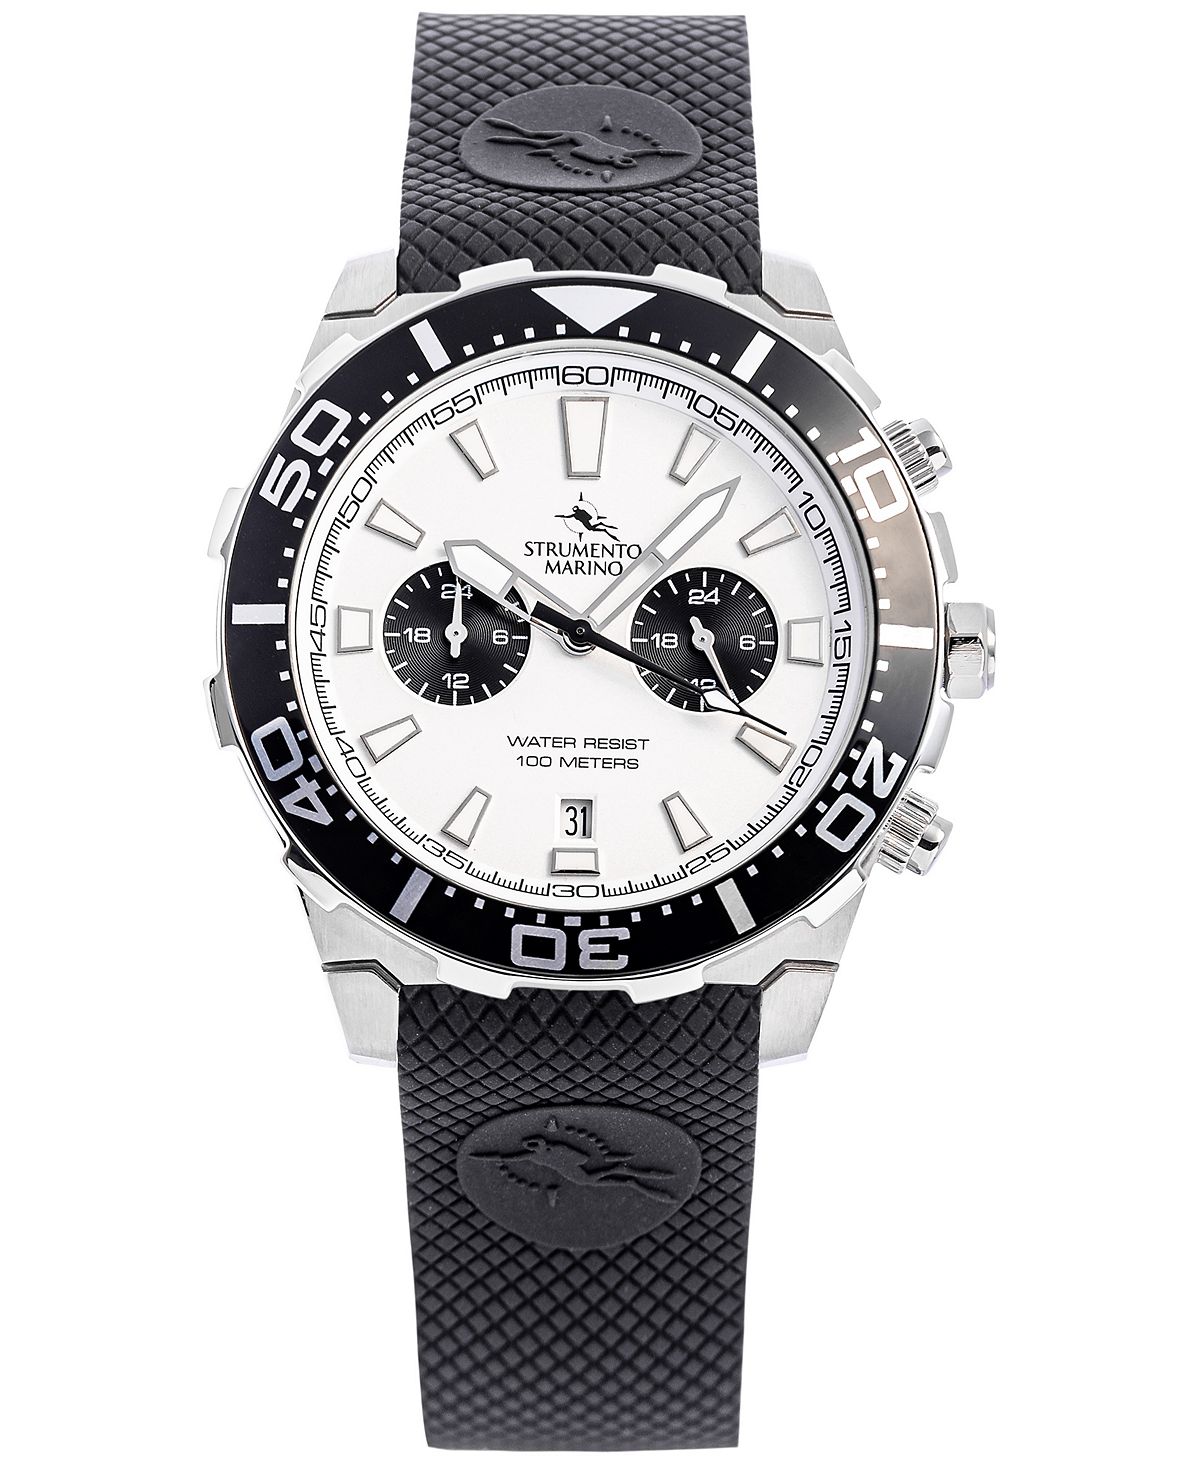 Мужские часы Skipper с двумя часовыми поясами, черный силиконовый ремешок, 44 мм Strumento Marino мужские часы skipper с двумя часовыми поясами черный силиконовый ремешок 44 мм strumento marino